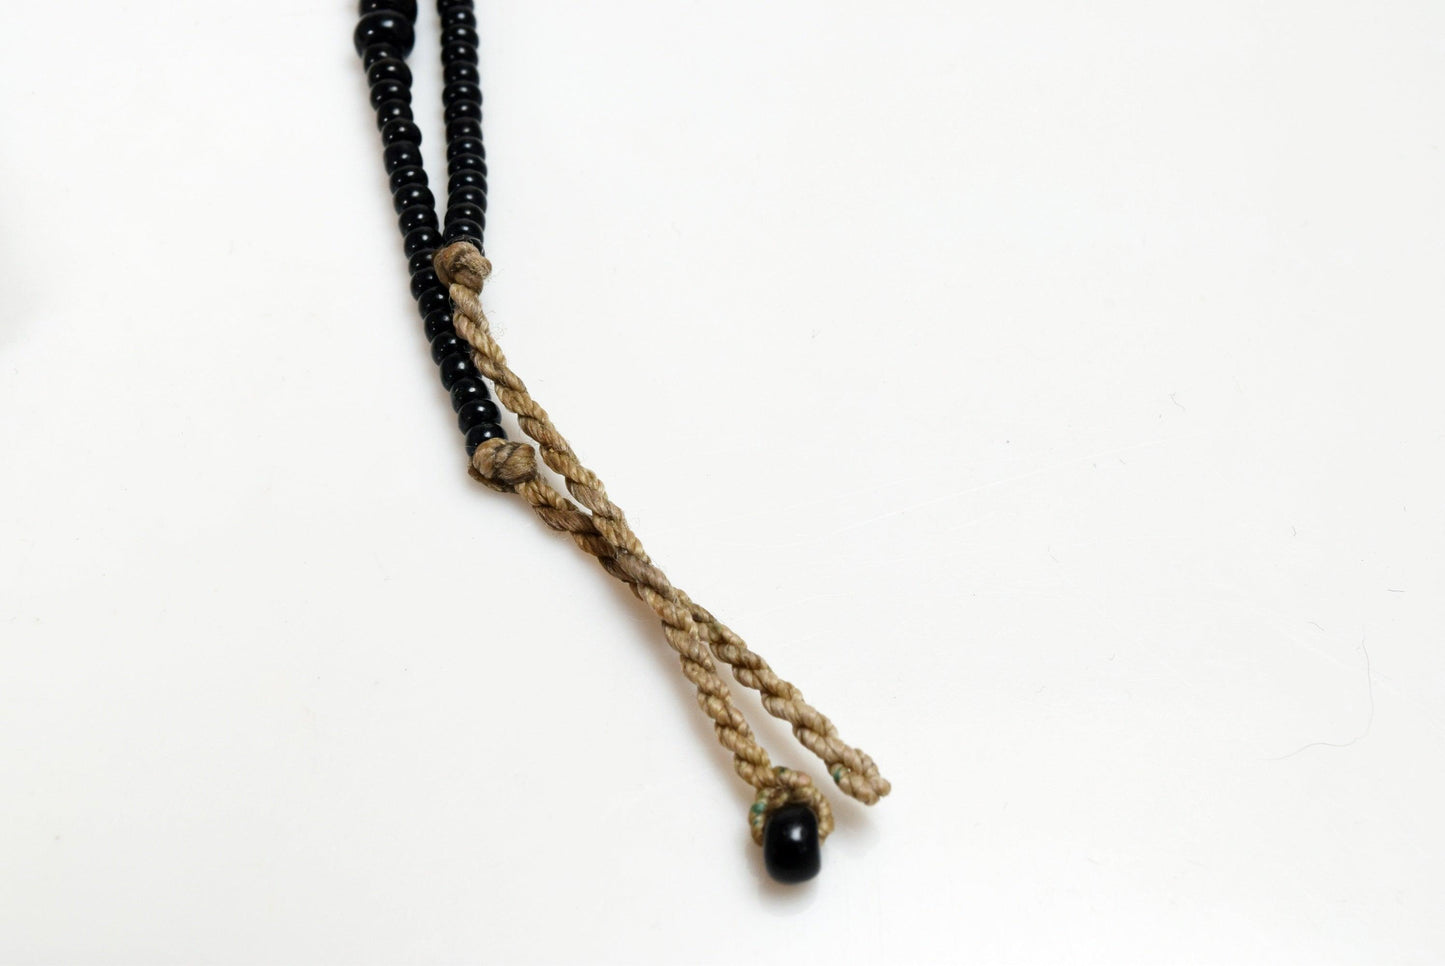 Vintage Tuareg Silver Amulet Necklace - Anteeka